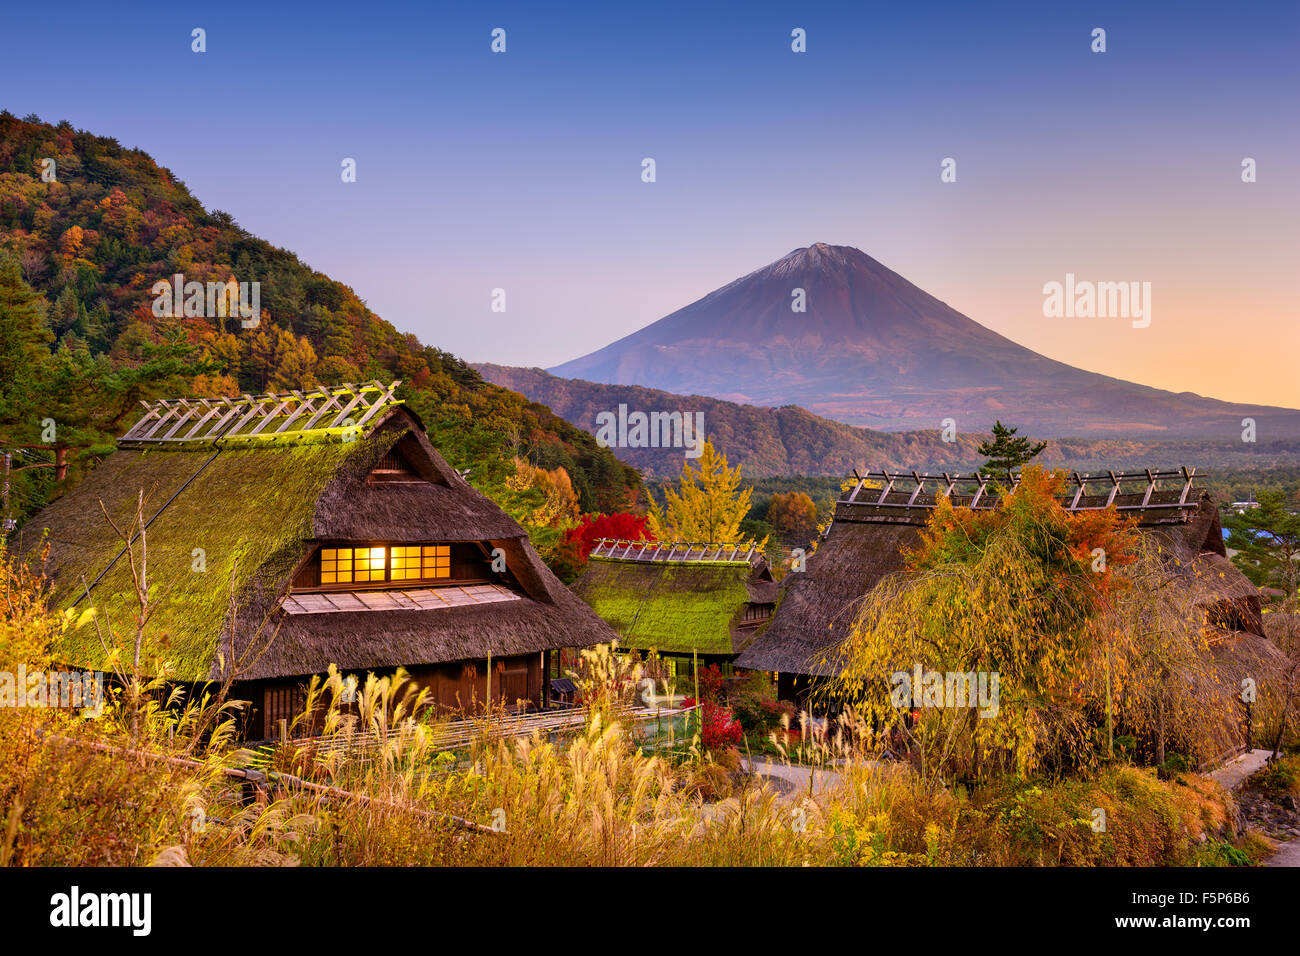 Mount Fuji, Japan von einem historischen Dorf gesehen. Stockfoto